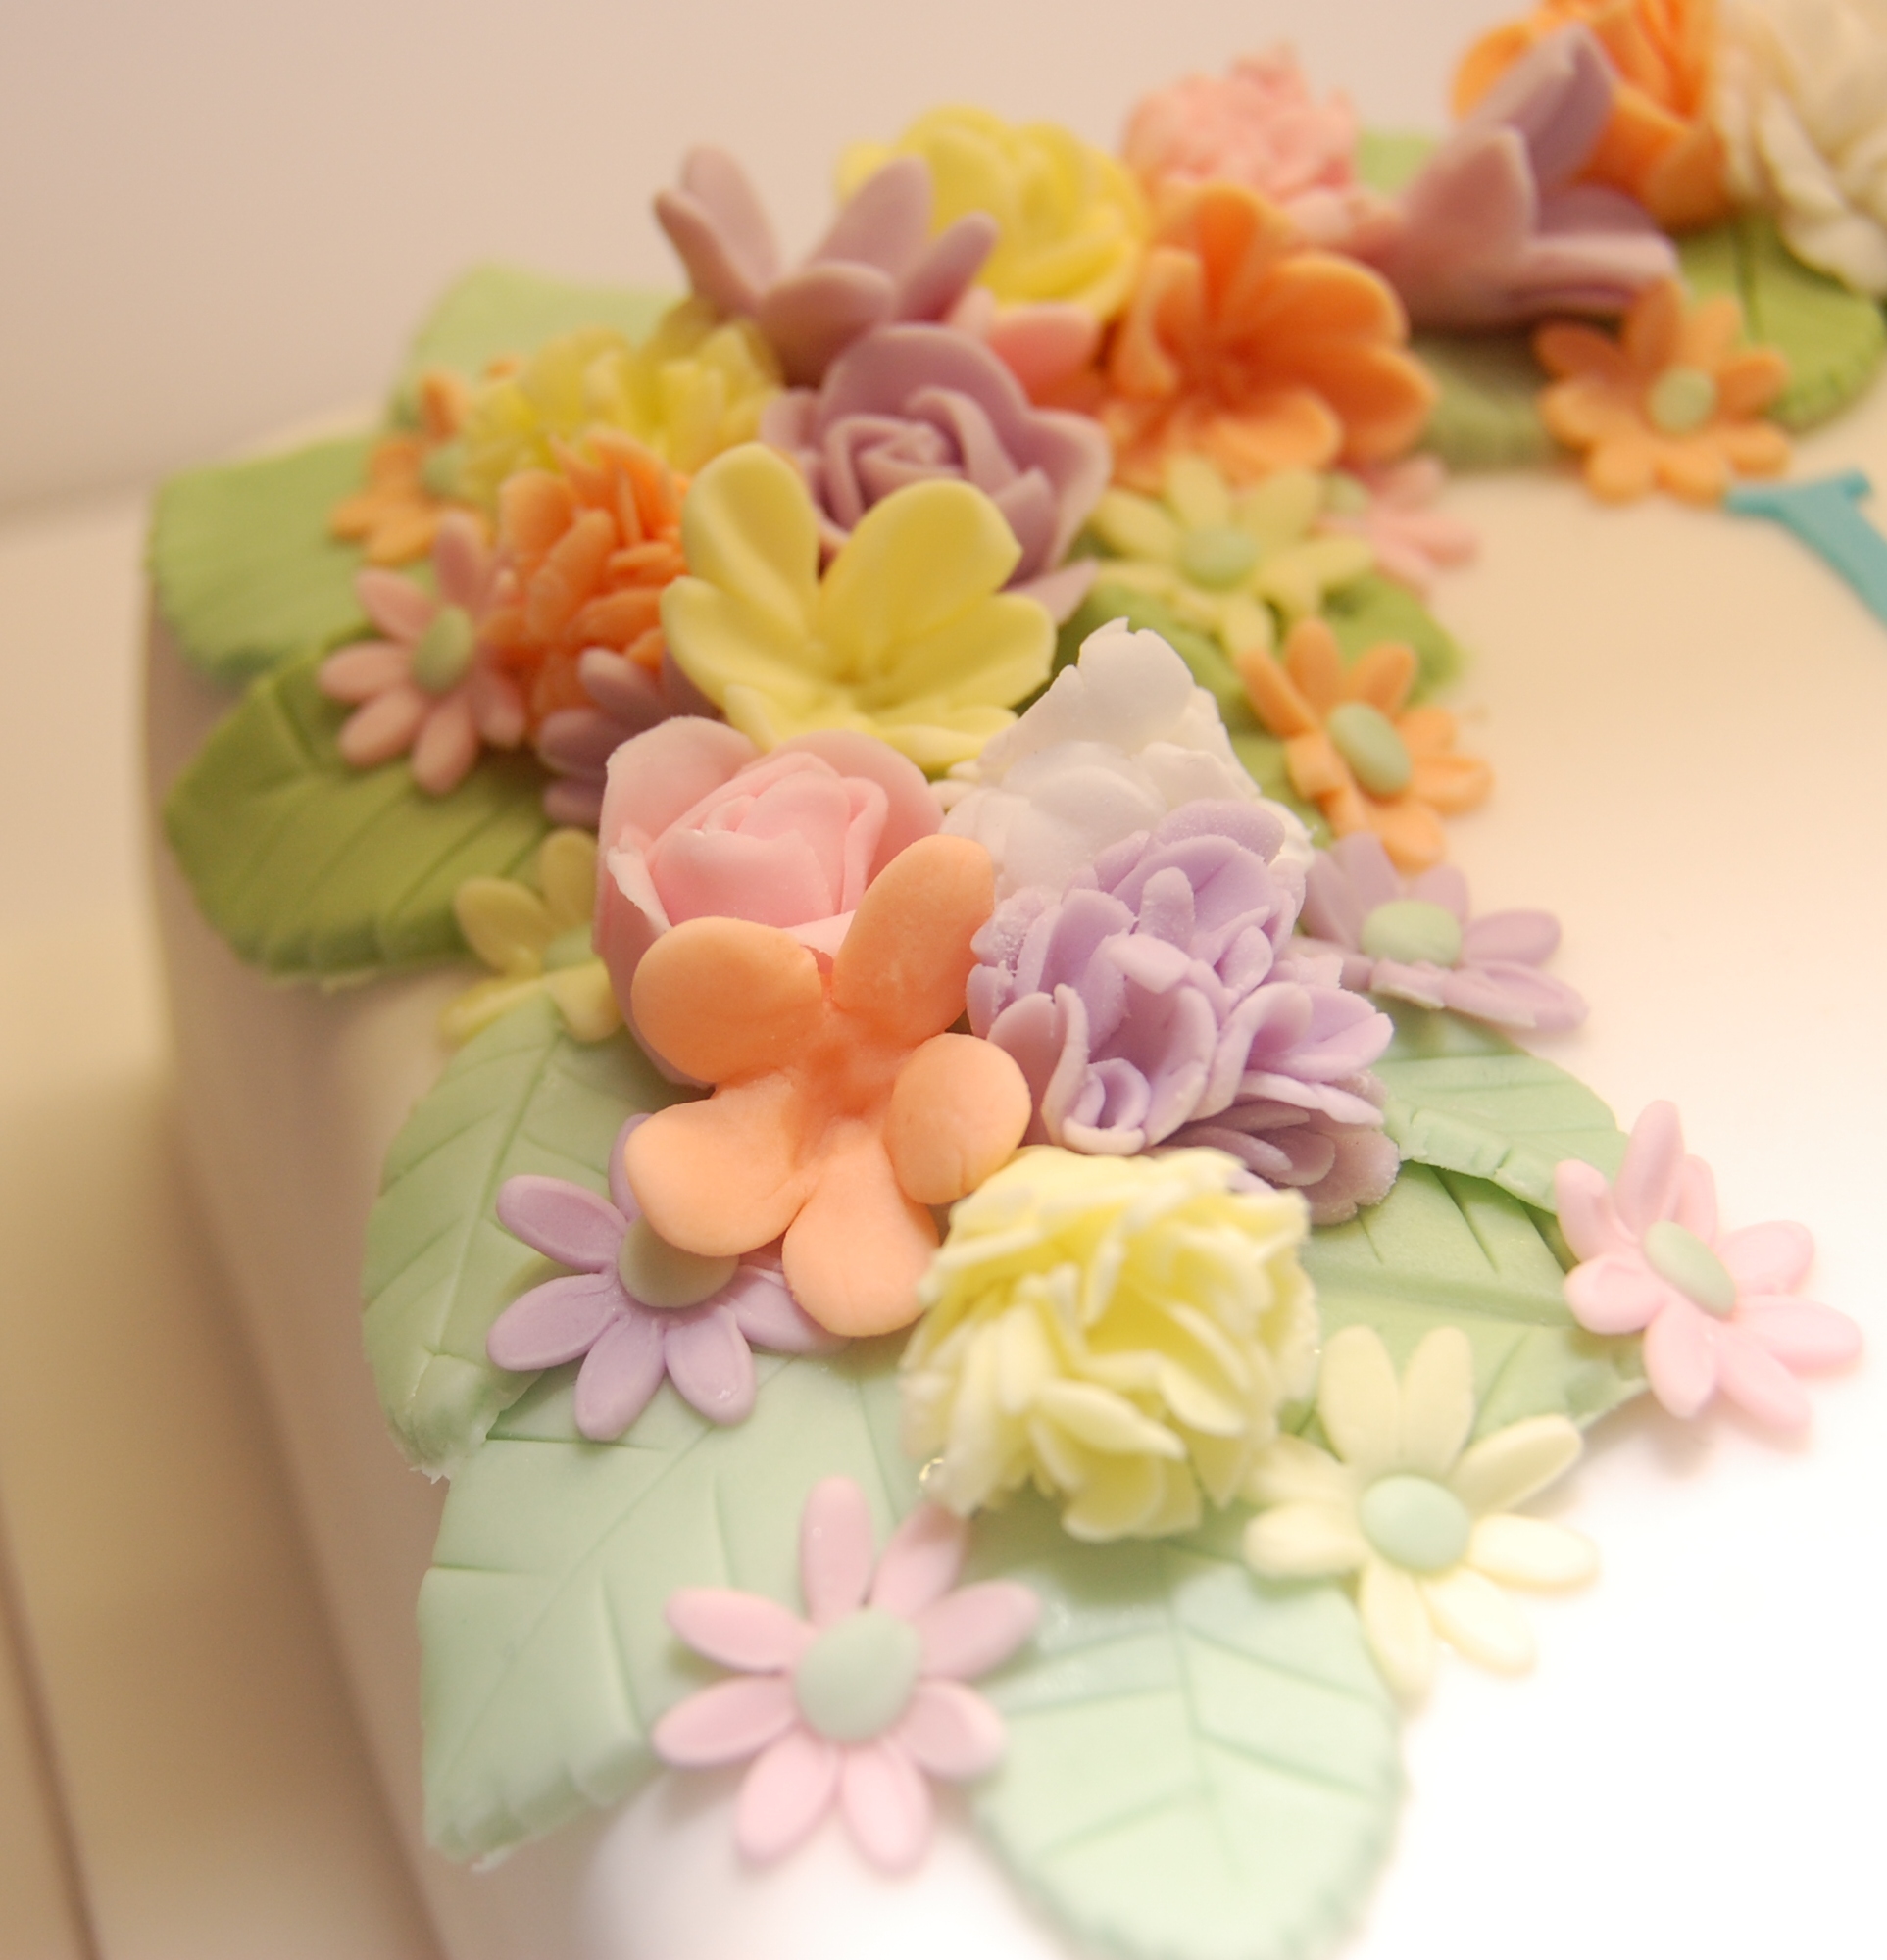 A Very Special Cake To Celebrate A Very Special 90th Birthday